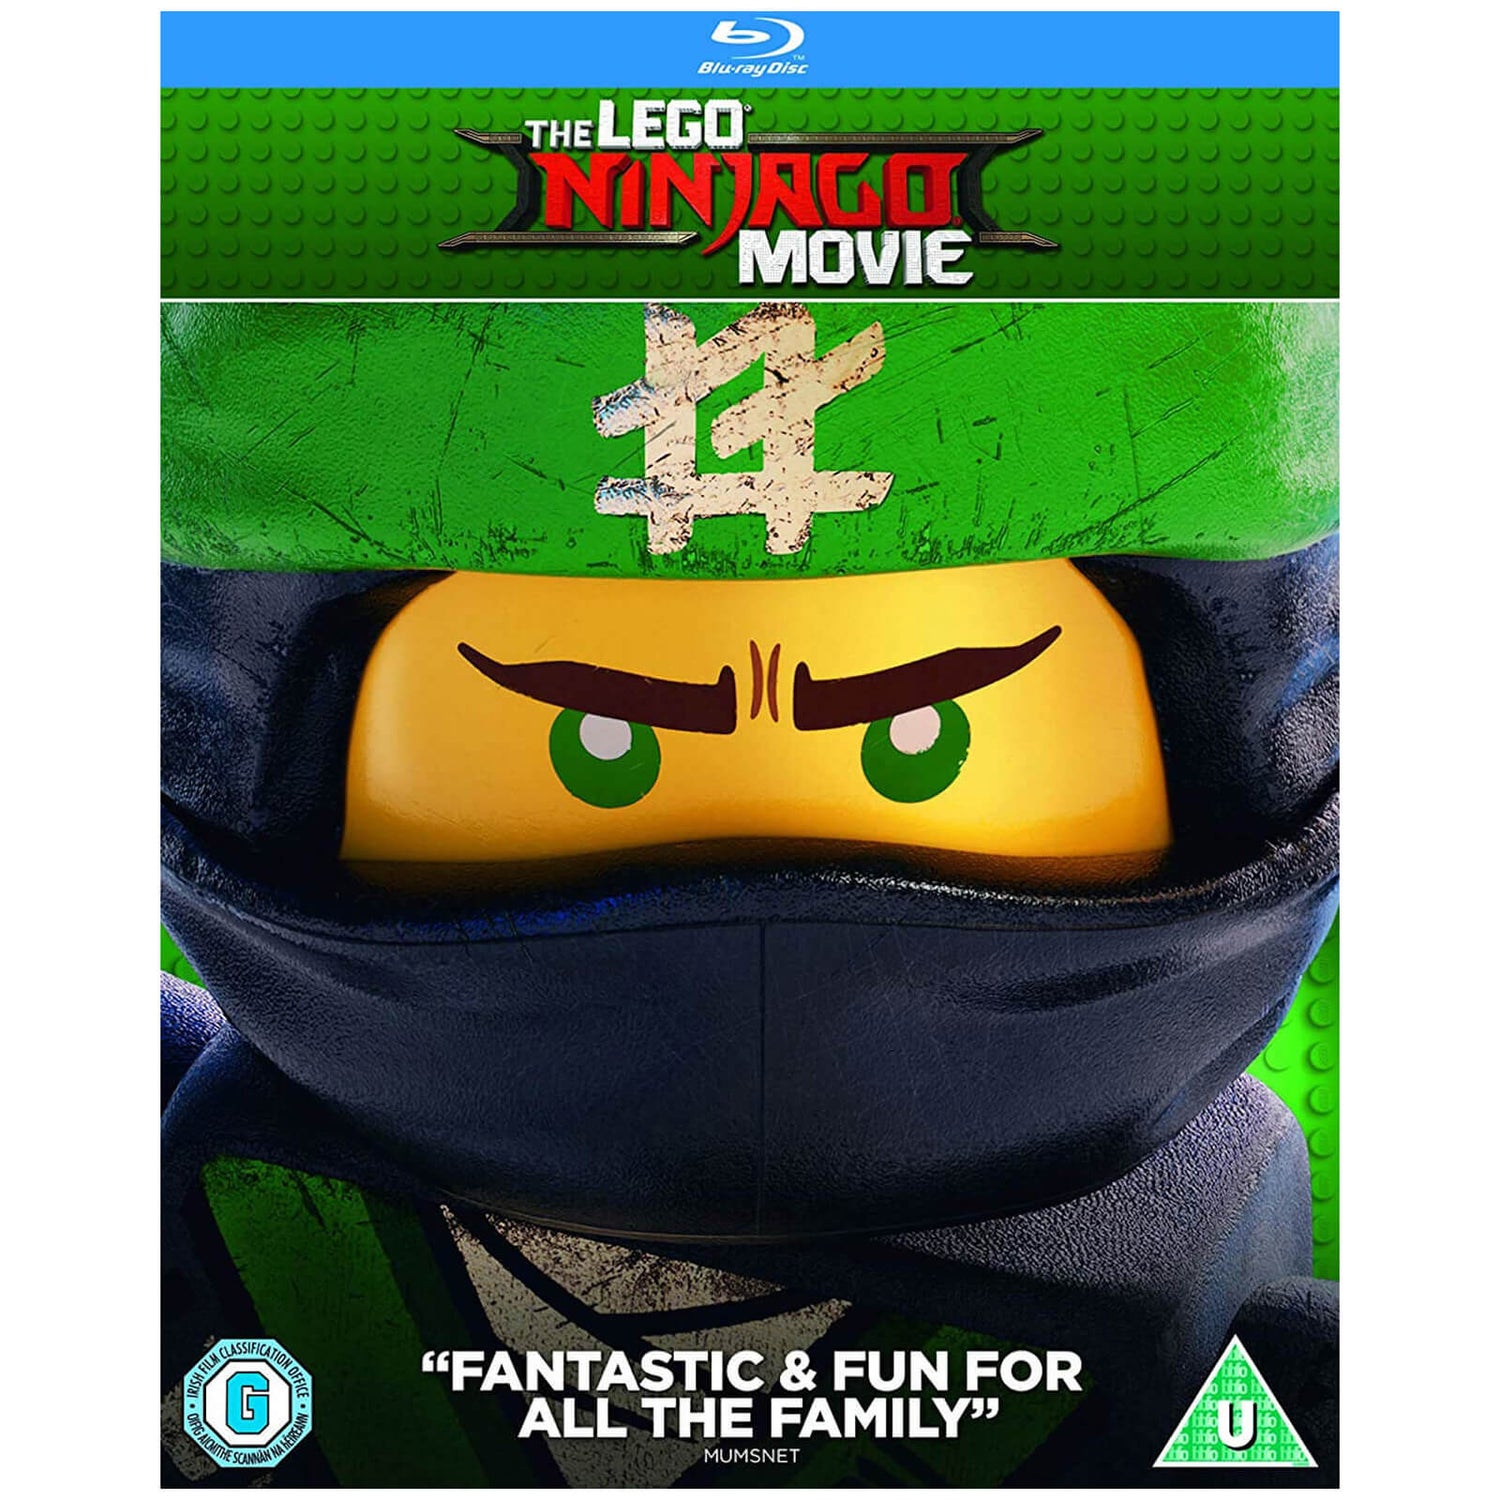 The LEGO Ninjago Movie (Includes Digital Download)